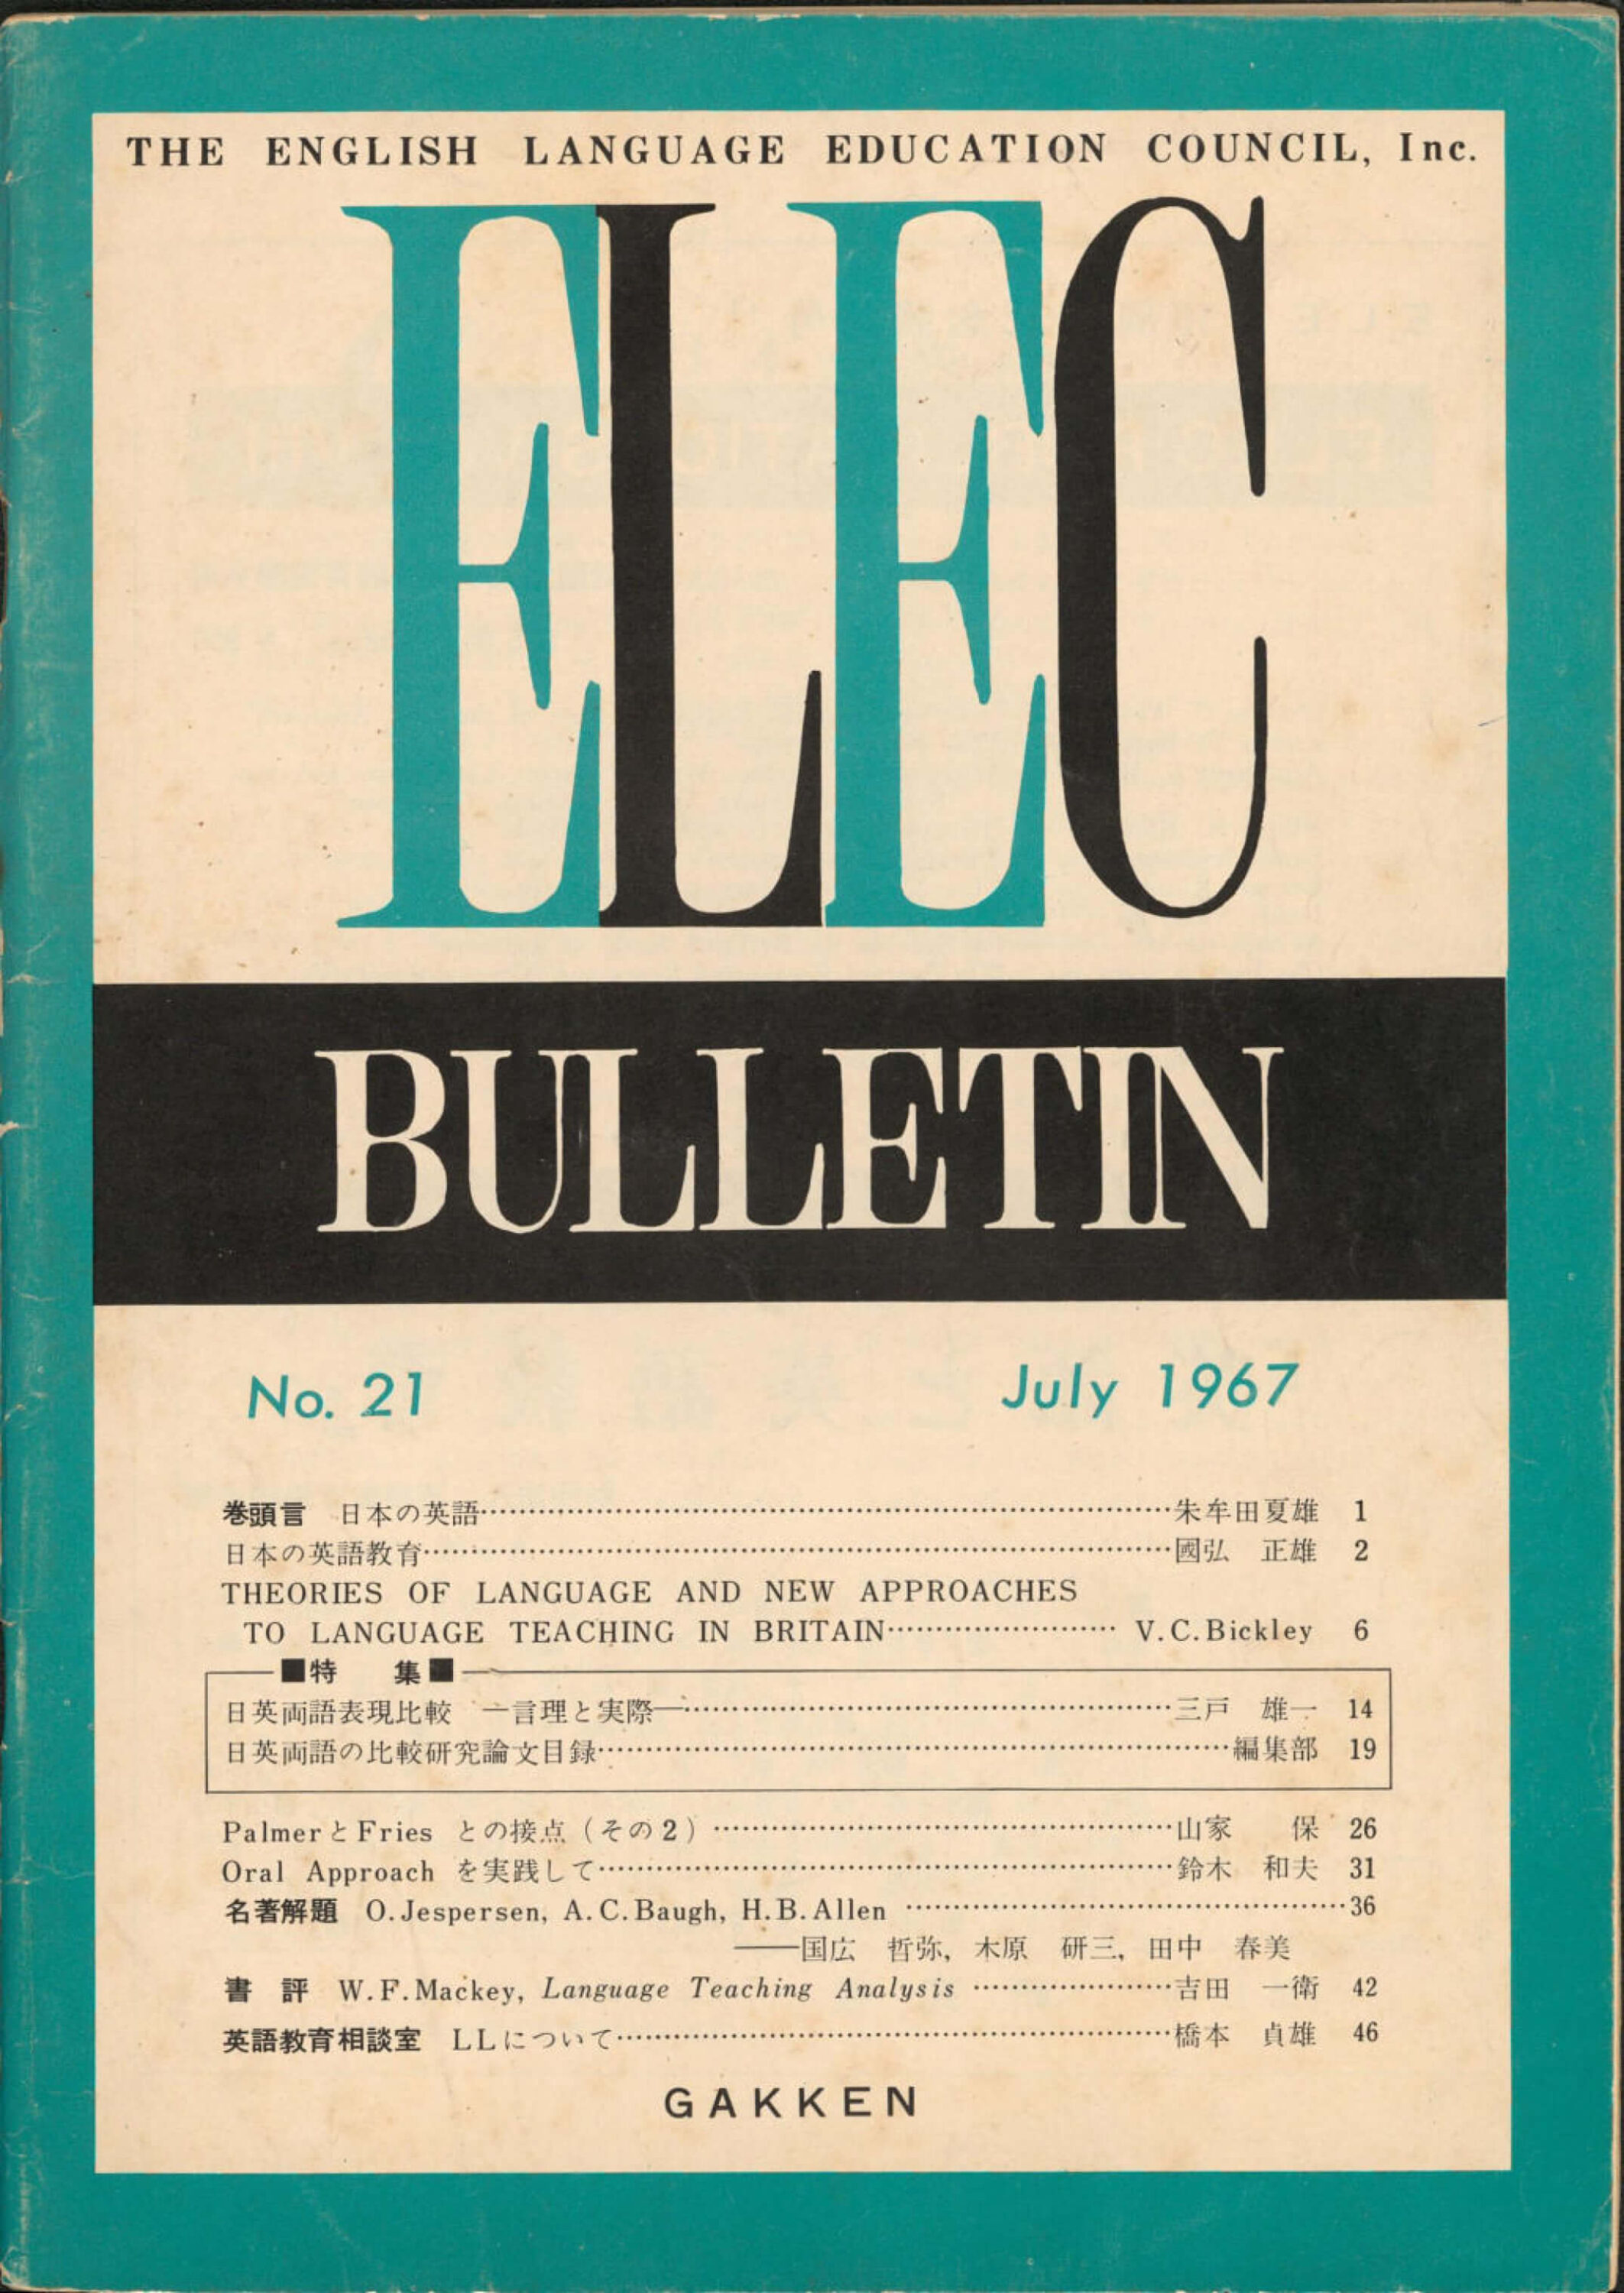 ELEC BULLETIN No. 21　July 1967